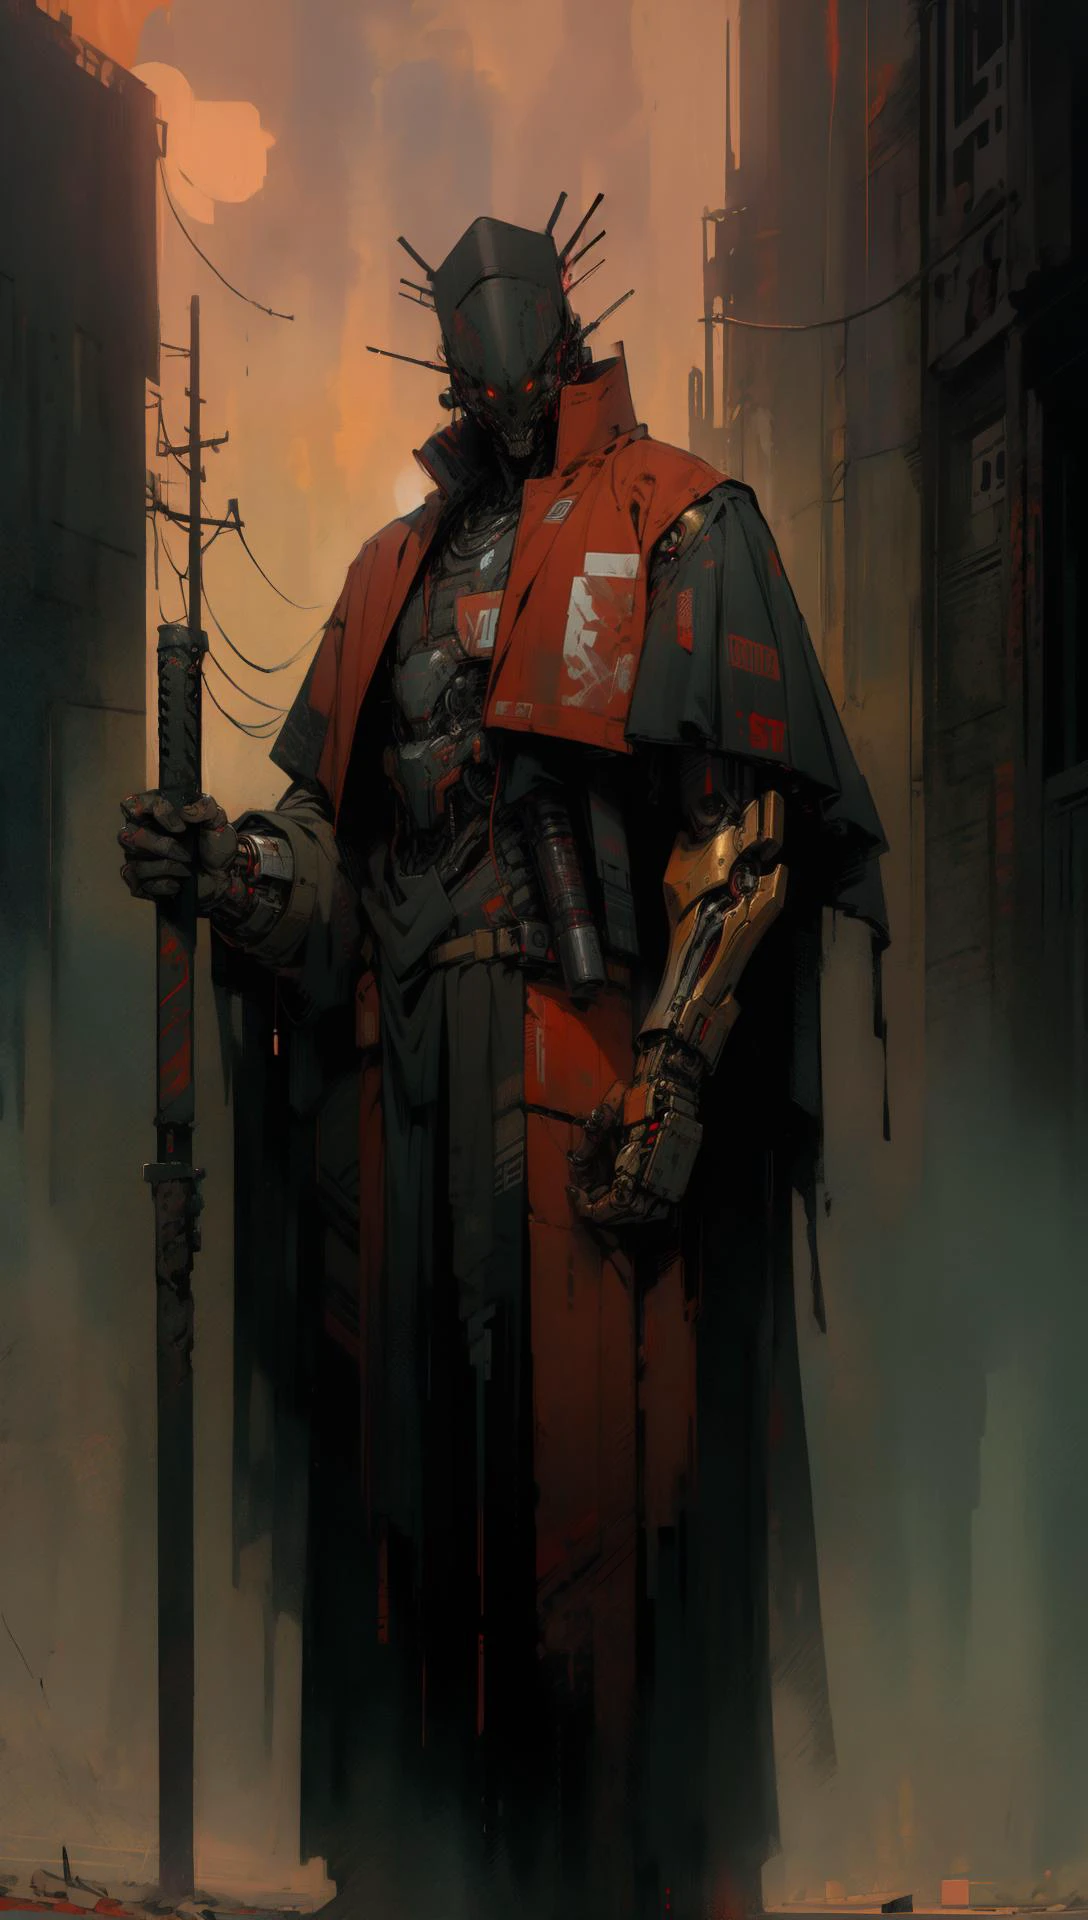 derpd, assassin cyborg mortel portant des robes armure, danger, ciel rouge,post-apocalypse 